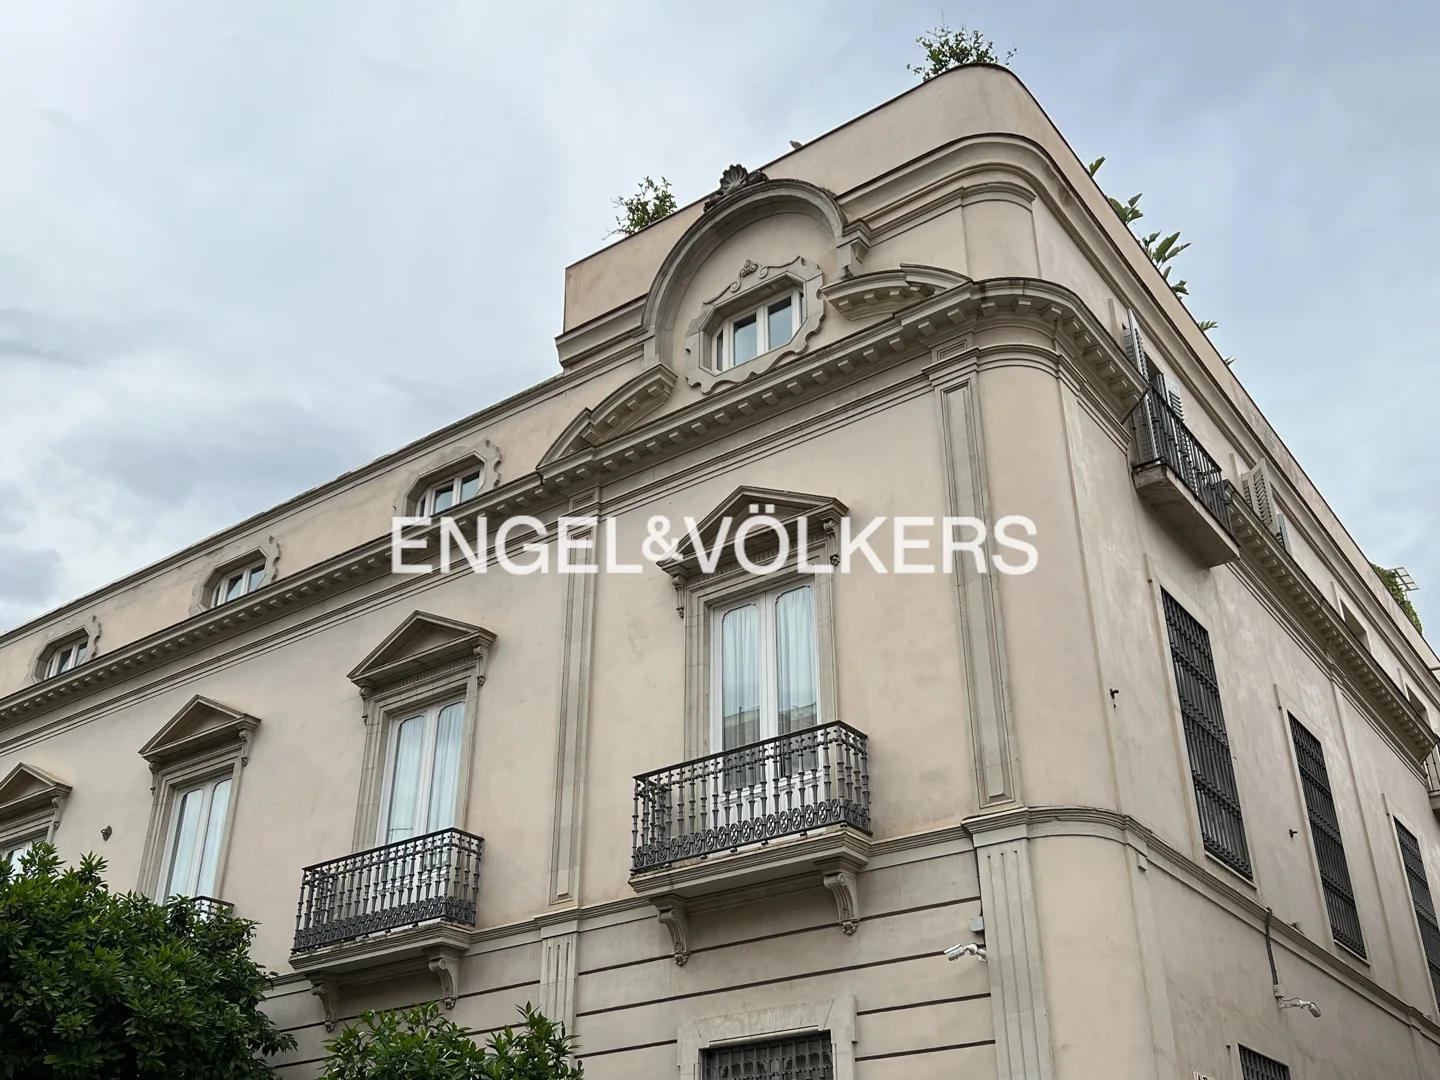 Luxuriöse Wohnimmobilie in einem Sevillanischen Palast.